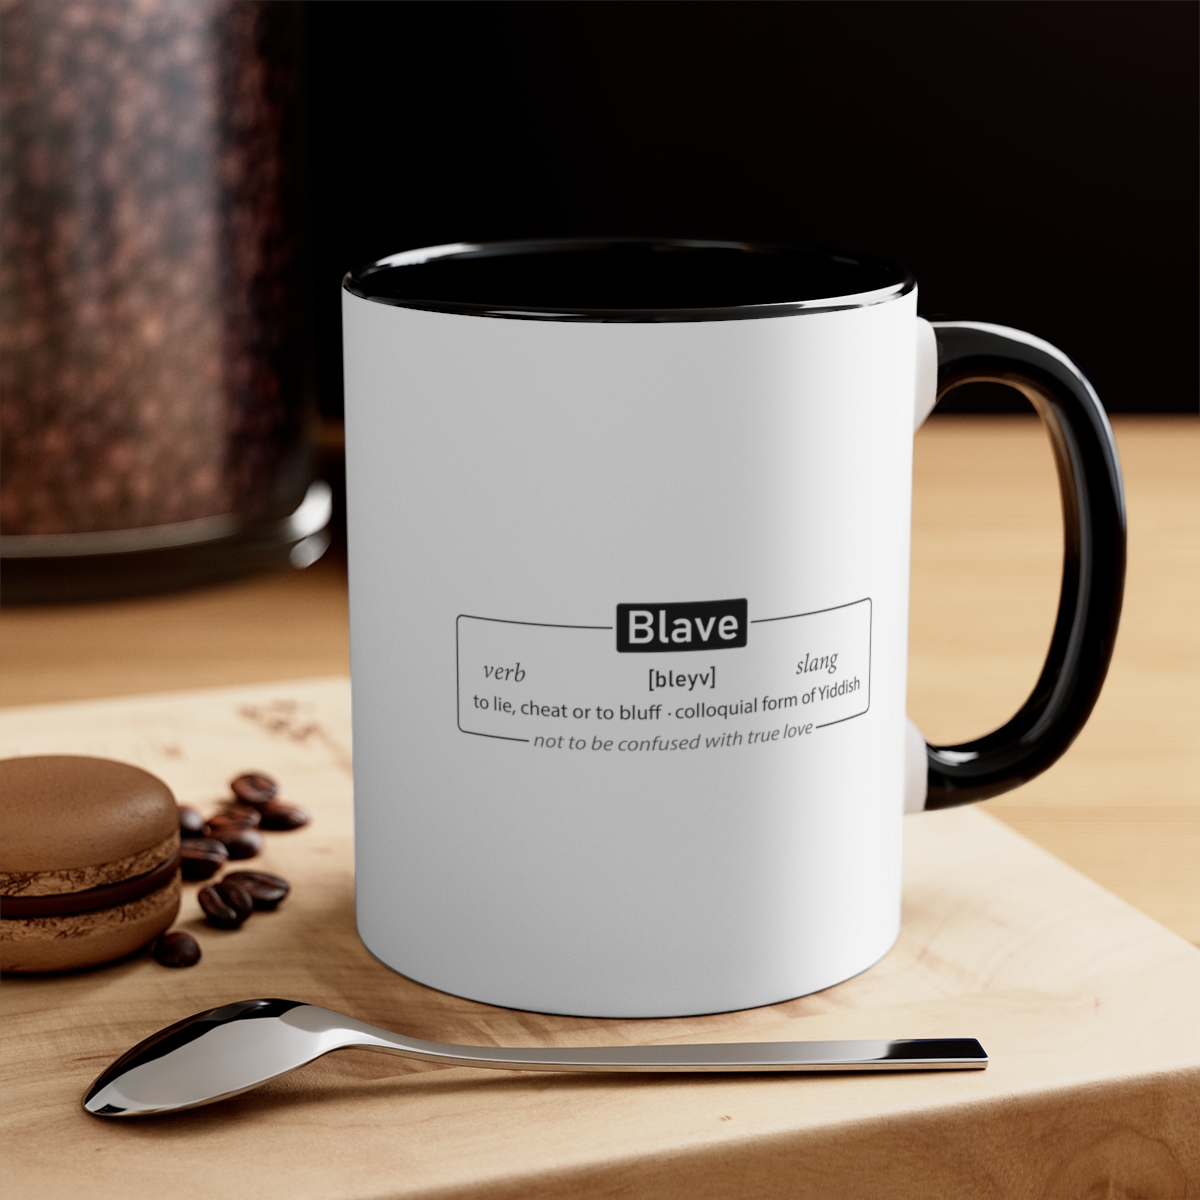 Blave - Accent Coffee Mug, 11oz